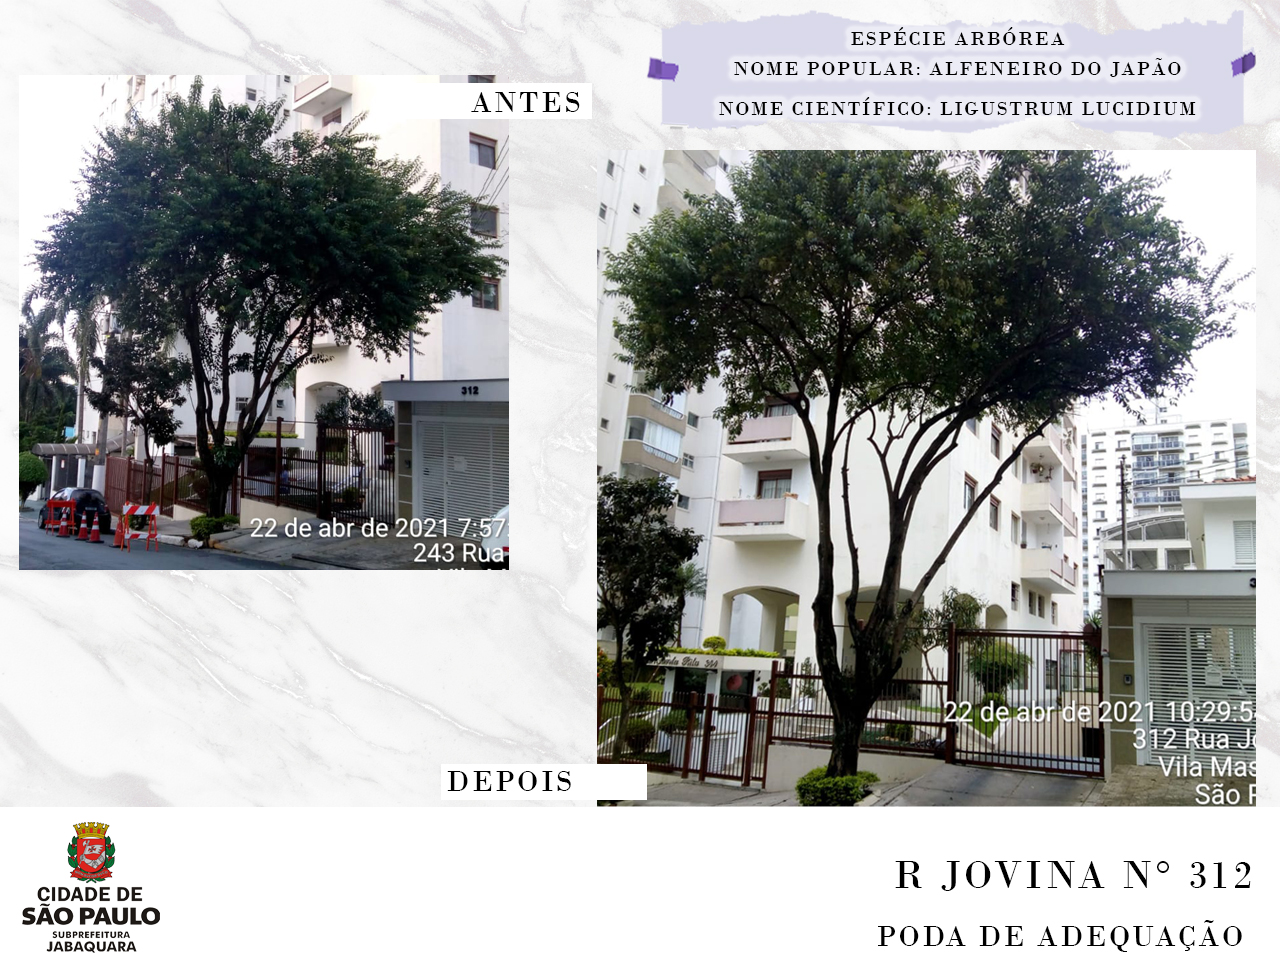  A esquerda foto do antes mostrando árvore na calçada em frente a um prédio. A direita foto mostrando a mesma árvore após poda de adequação realizada na Rua Jovina, número 312. Acima descrição da espécie arbórea, o nome popular é Alfeneiro do Japão e o nome científico é Ligustrum Lucidium. 